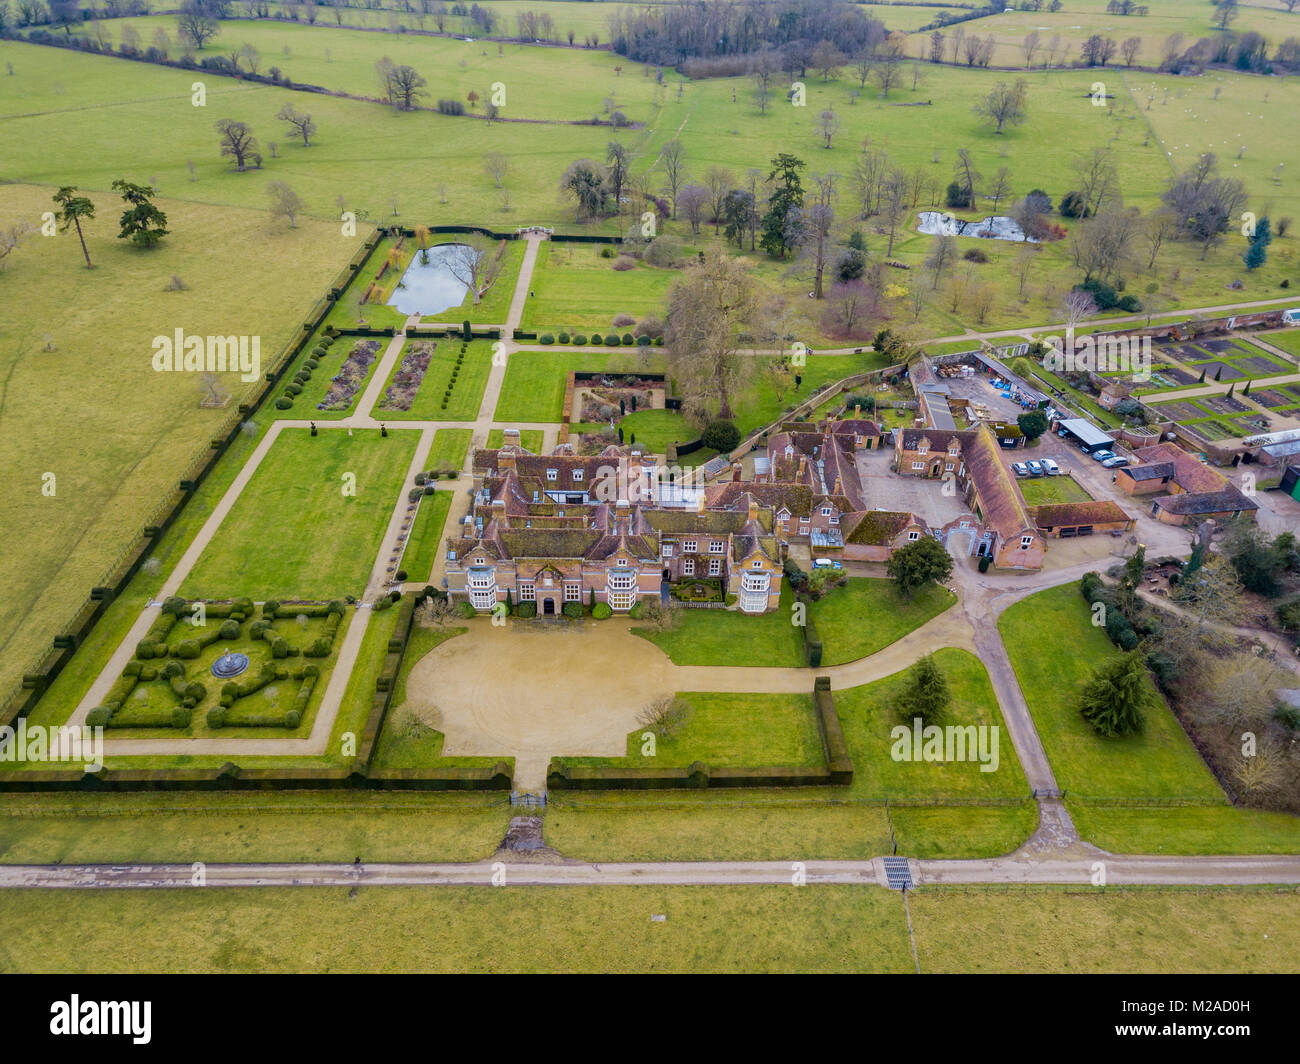 Godinton House & Gardens, Ashford, Kent vue aérienne Banque D'Images